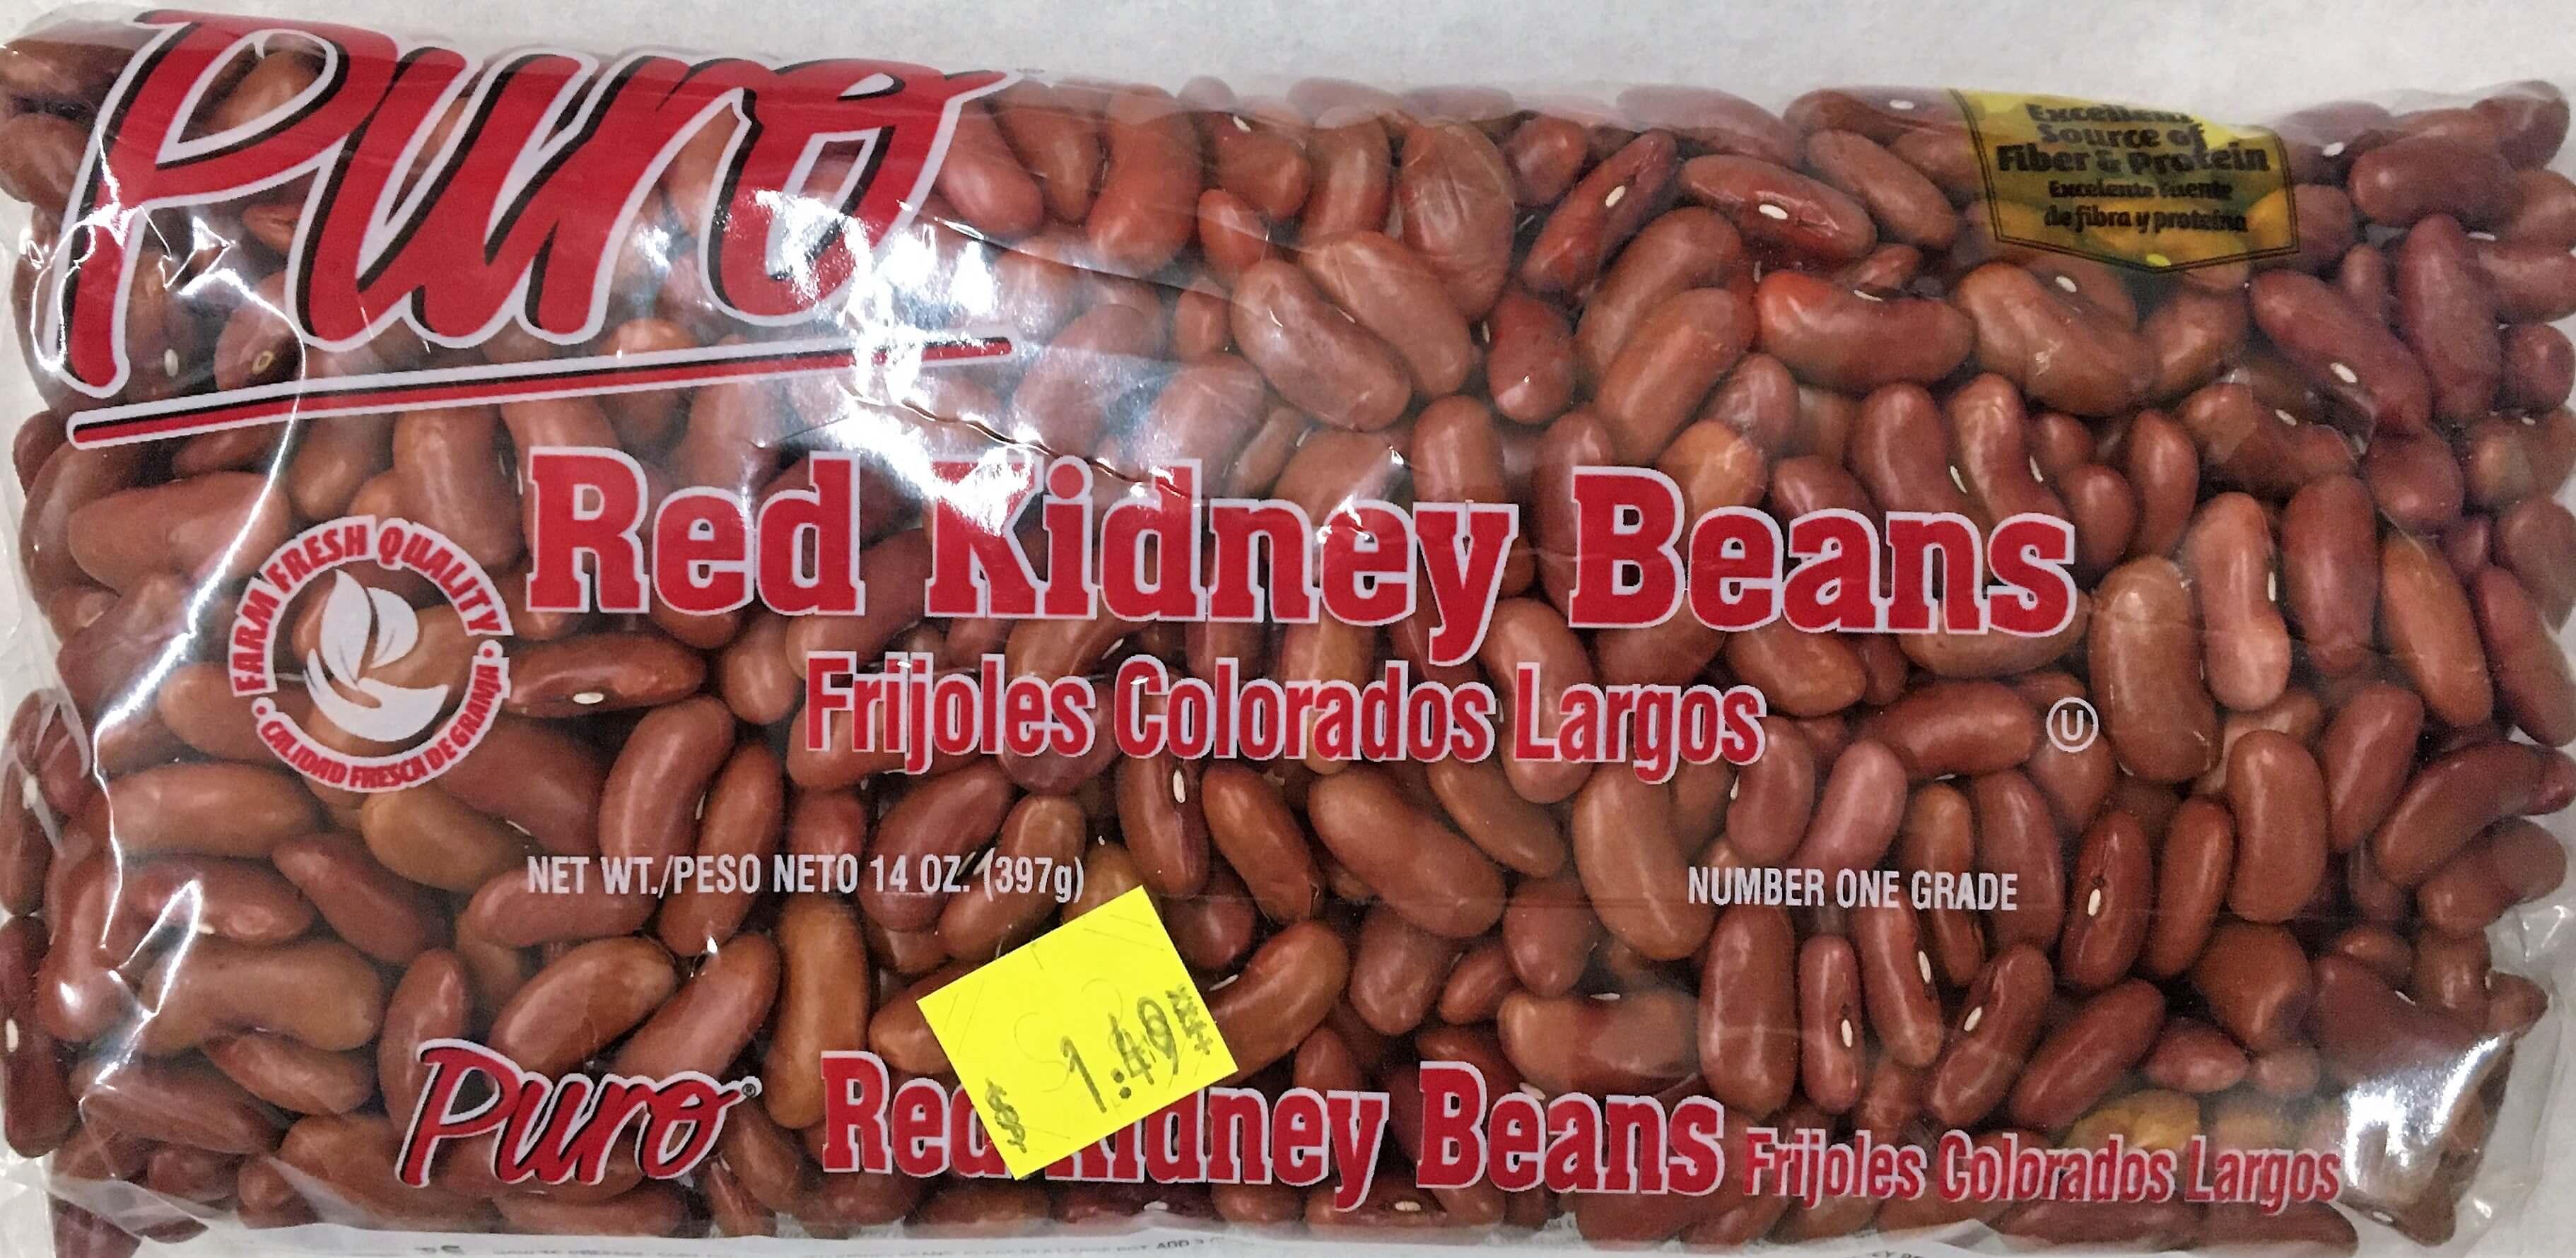 Puro - Red Kidney Beans 14oz.